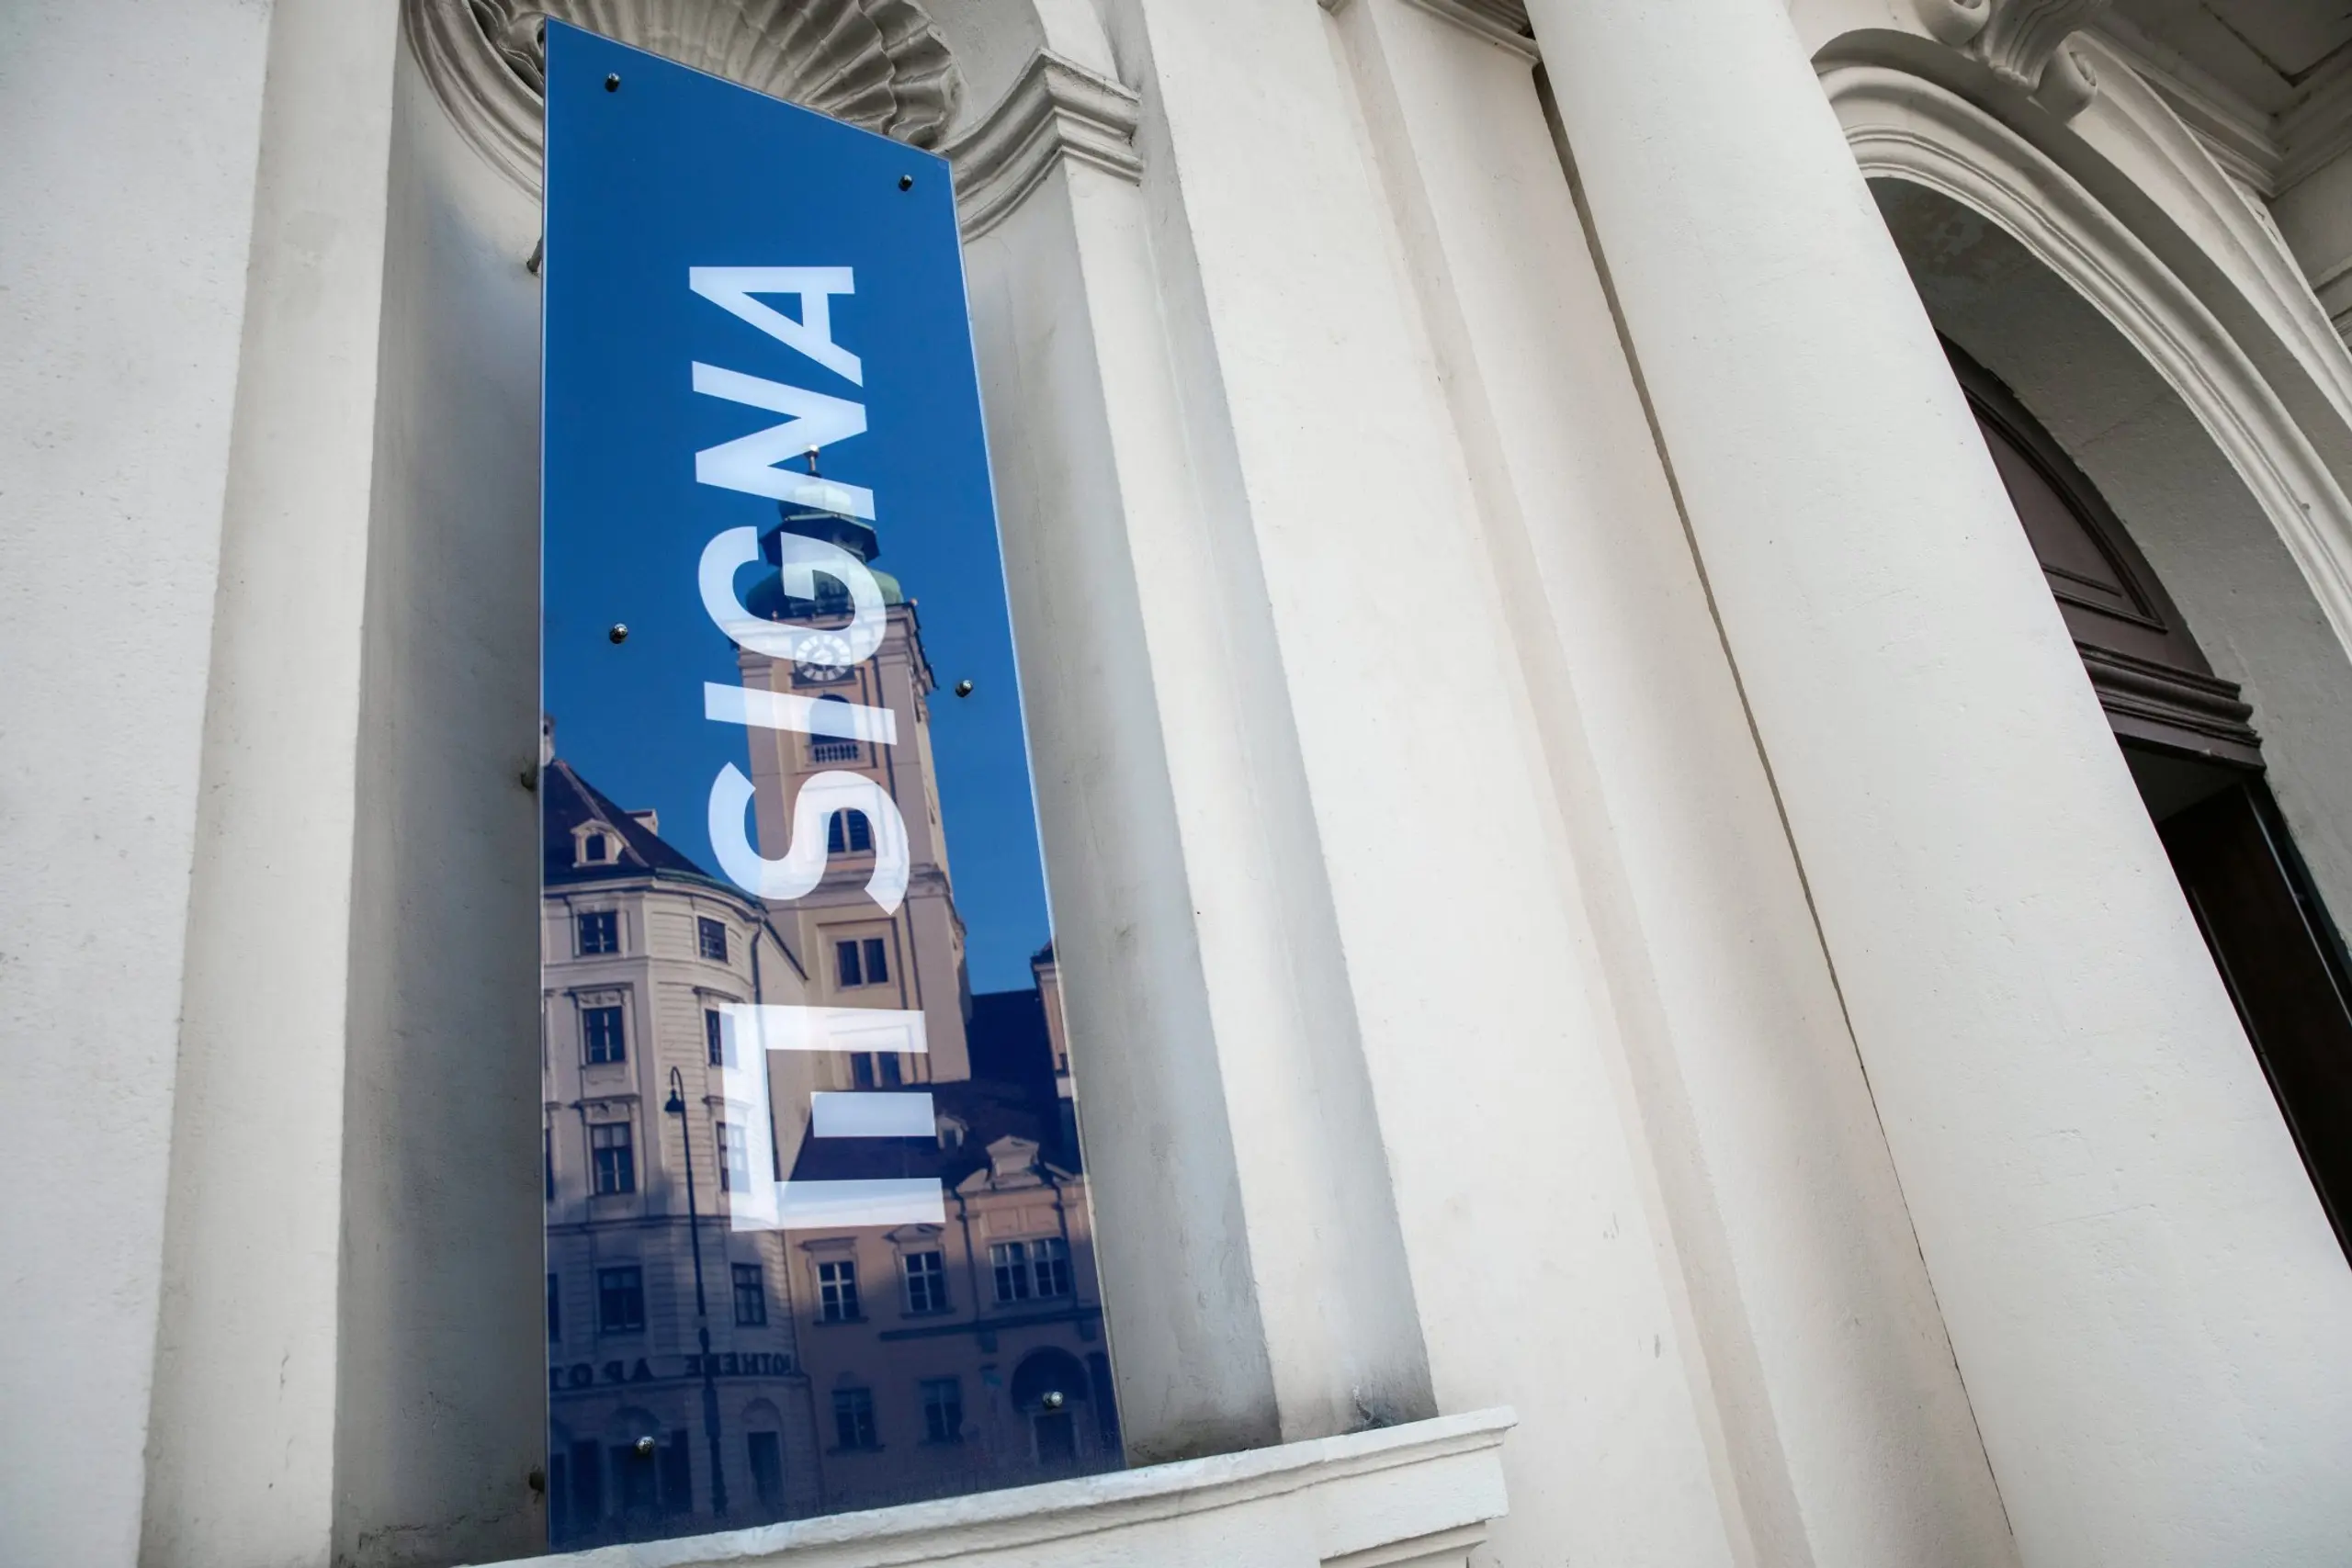 Signa Holding: Konkurs statt Sanierung - Gläubigern droht Totalausfall